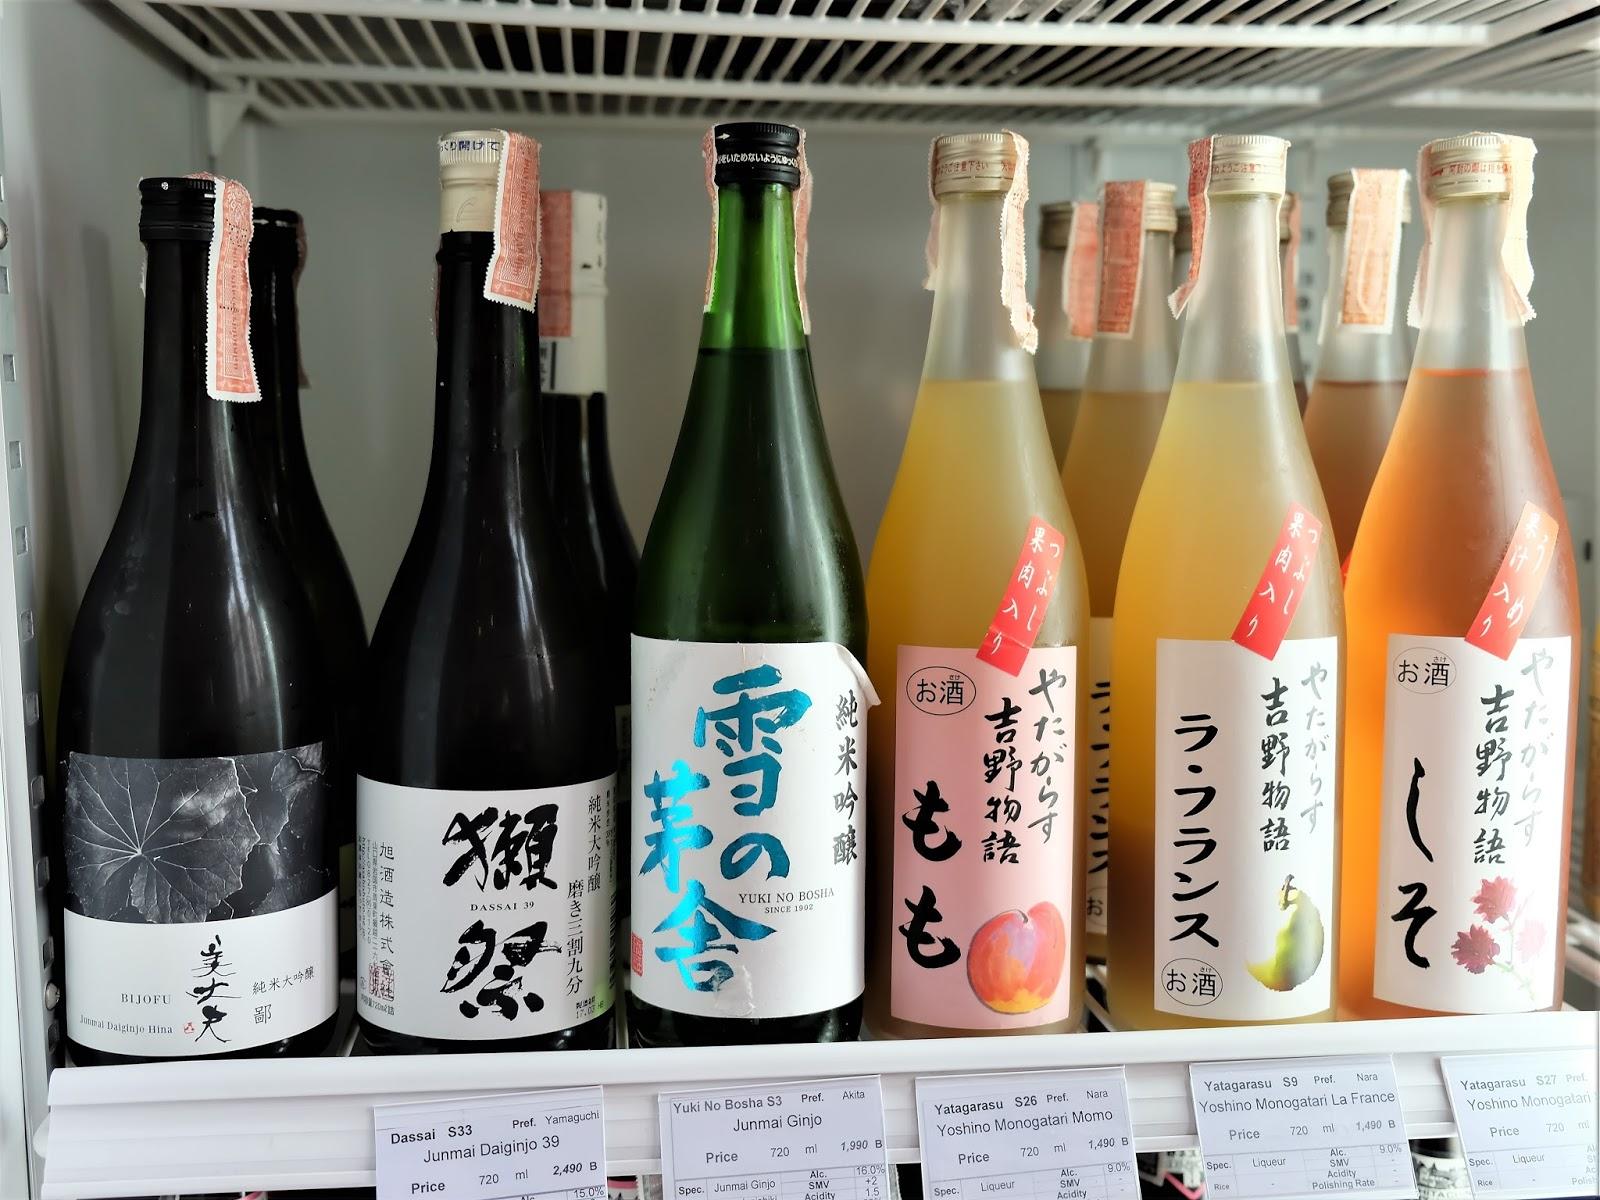 ความลับ 4 อย่าง ในการดื่มสาเกของคนญี่ปุ่น 4